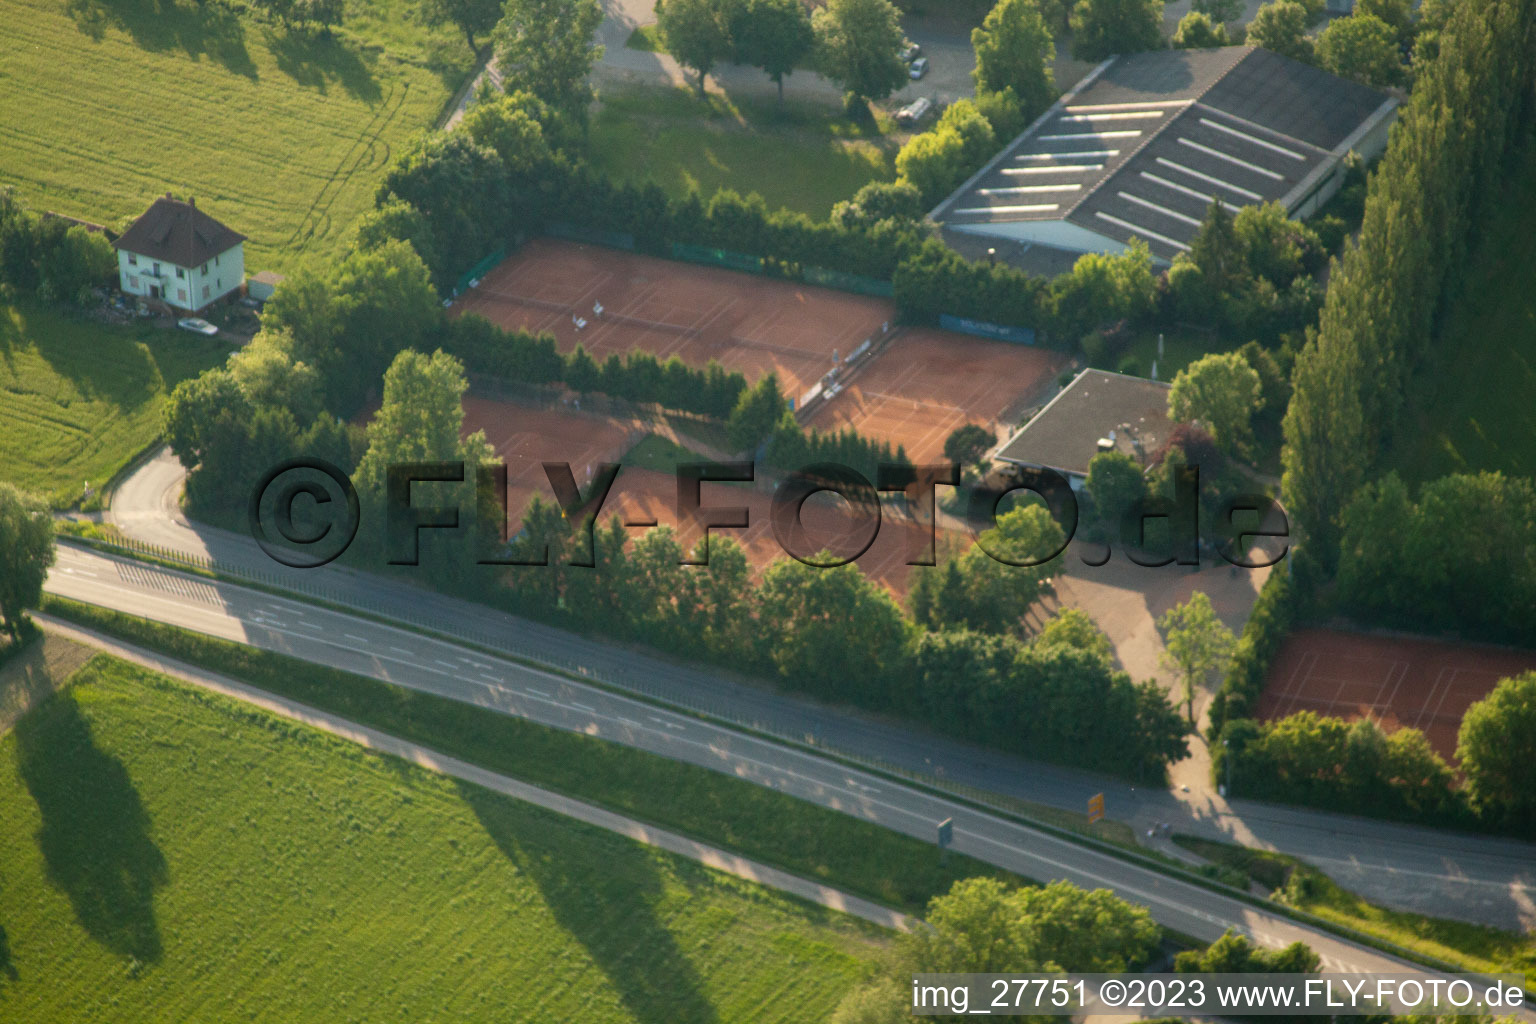 Luftbild von Tennisclub Rot Weiss e.V in Wiesloch im Bundesland Baden-Württemberg, Deutschland